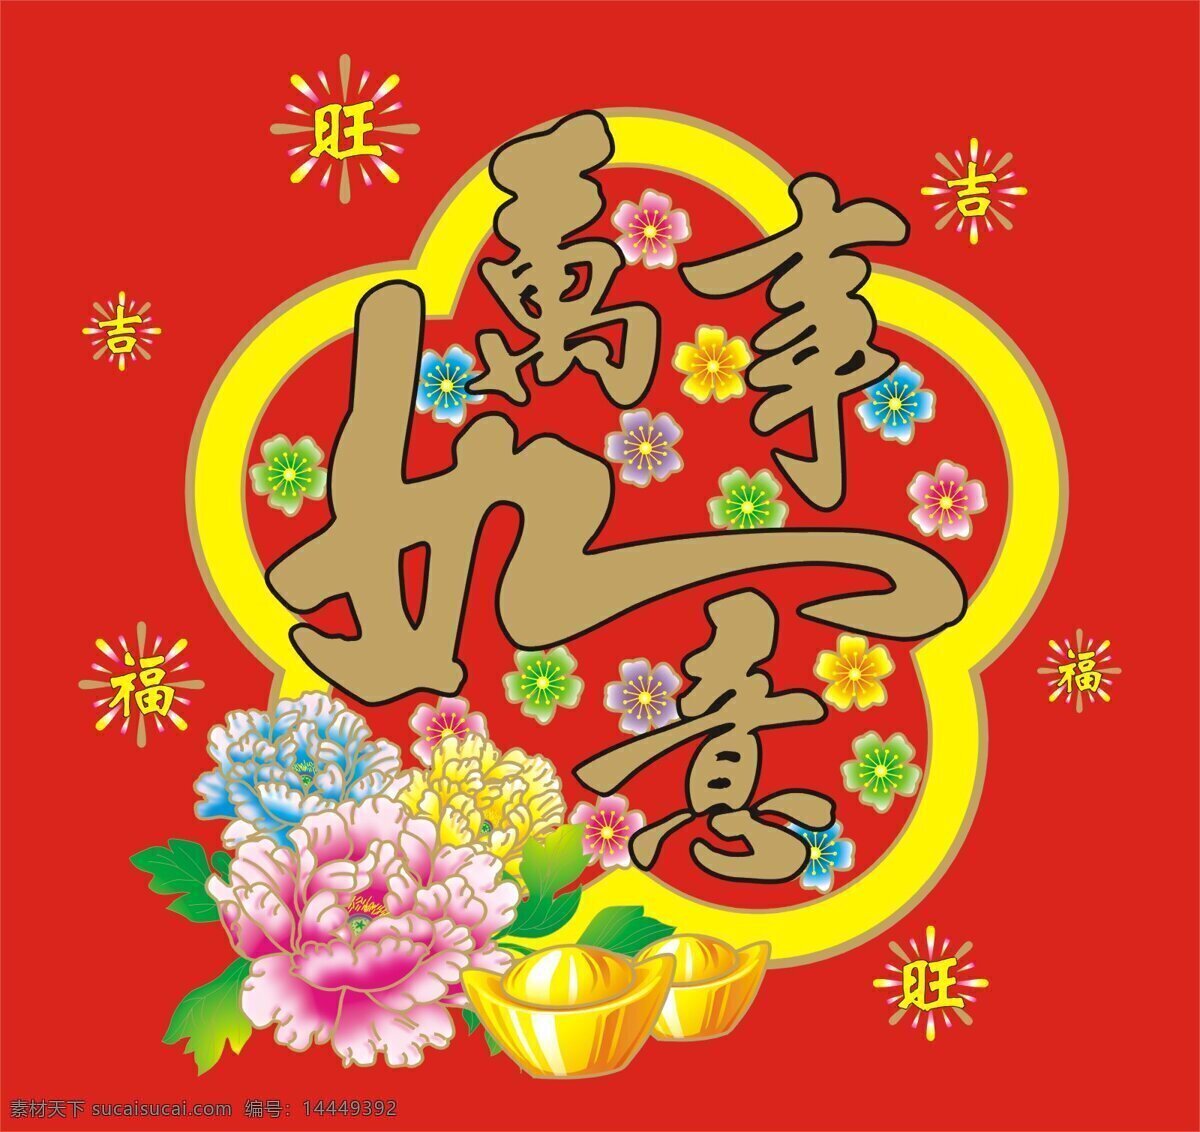 万事如意 铜钱 吉 桃花 窗花 烟花 旺 元宝 中国传统图案 传统文化 文化艺术